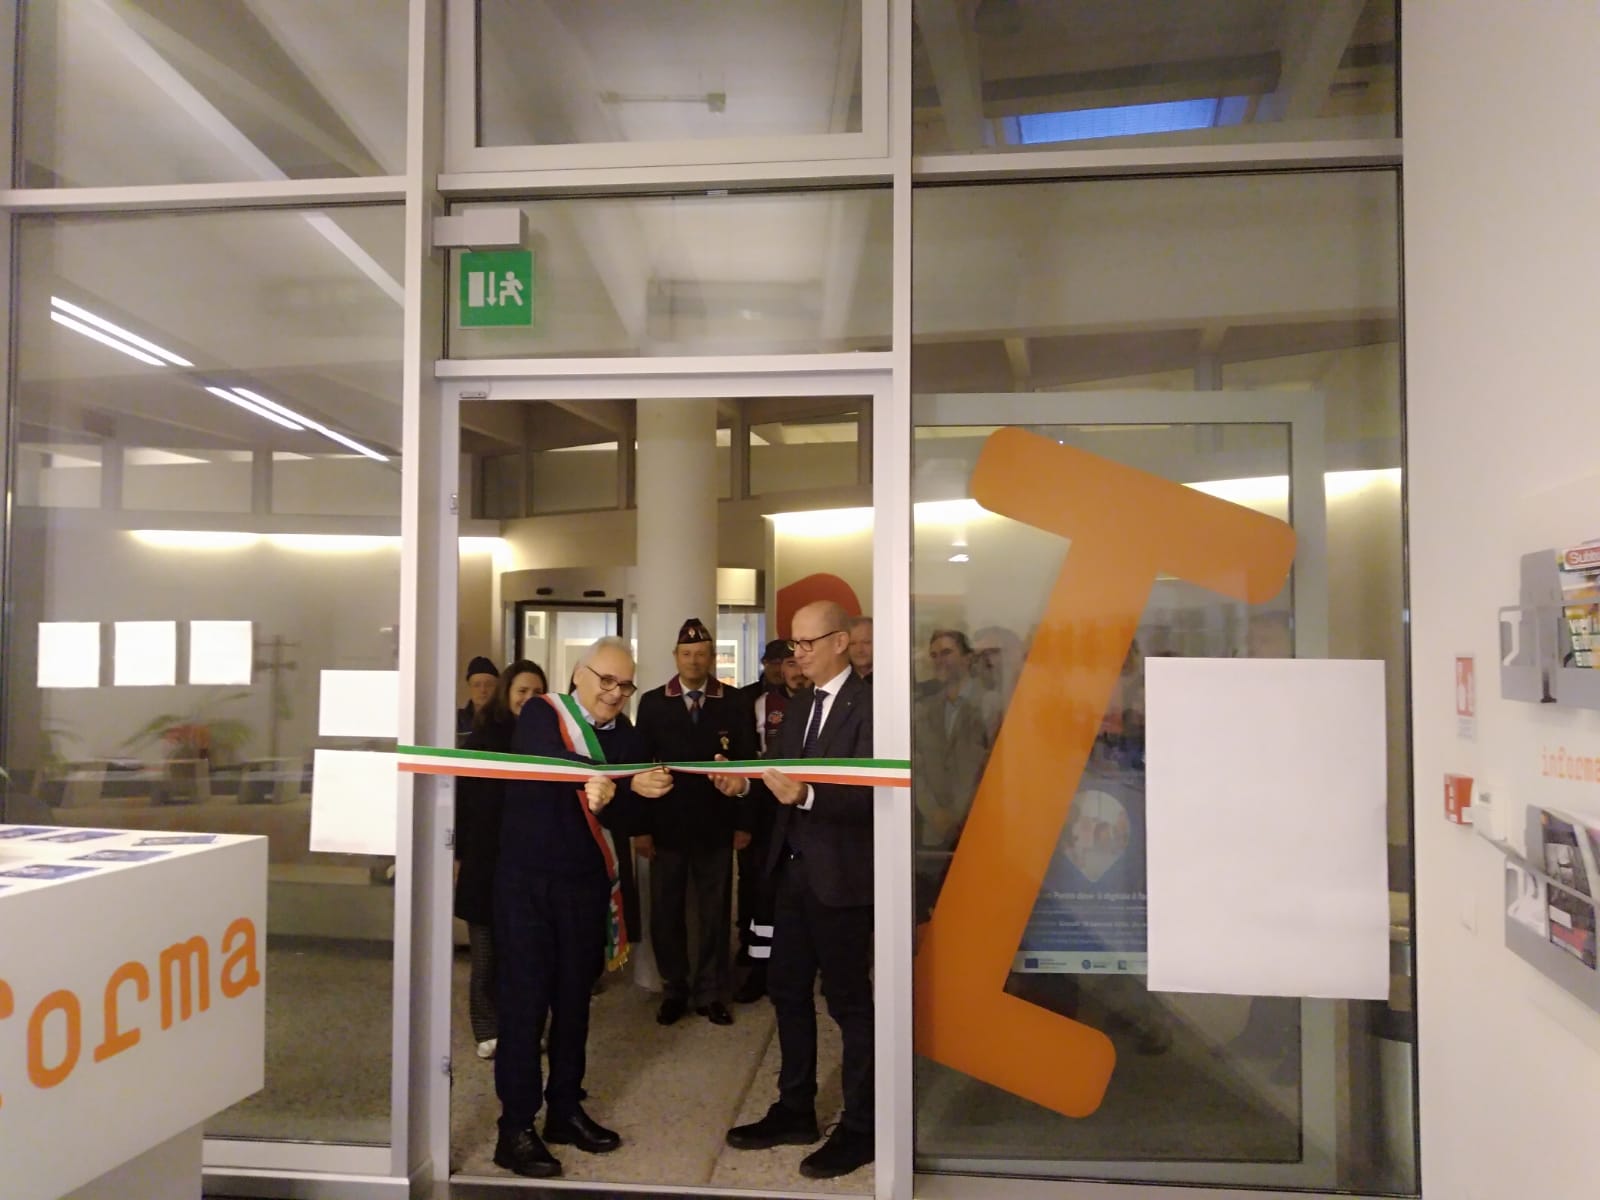 Inaugurato oggi a Rosignano (Li) il Punto Digitale facile